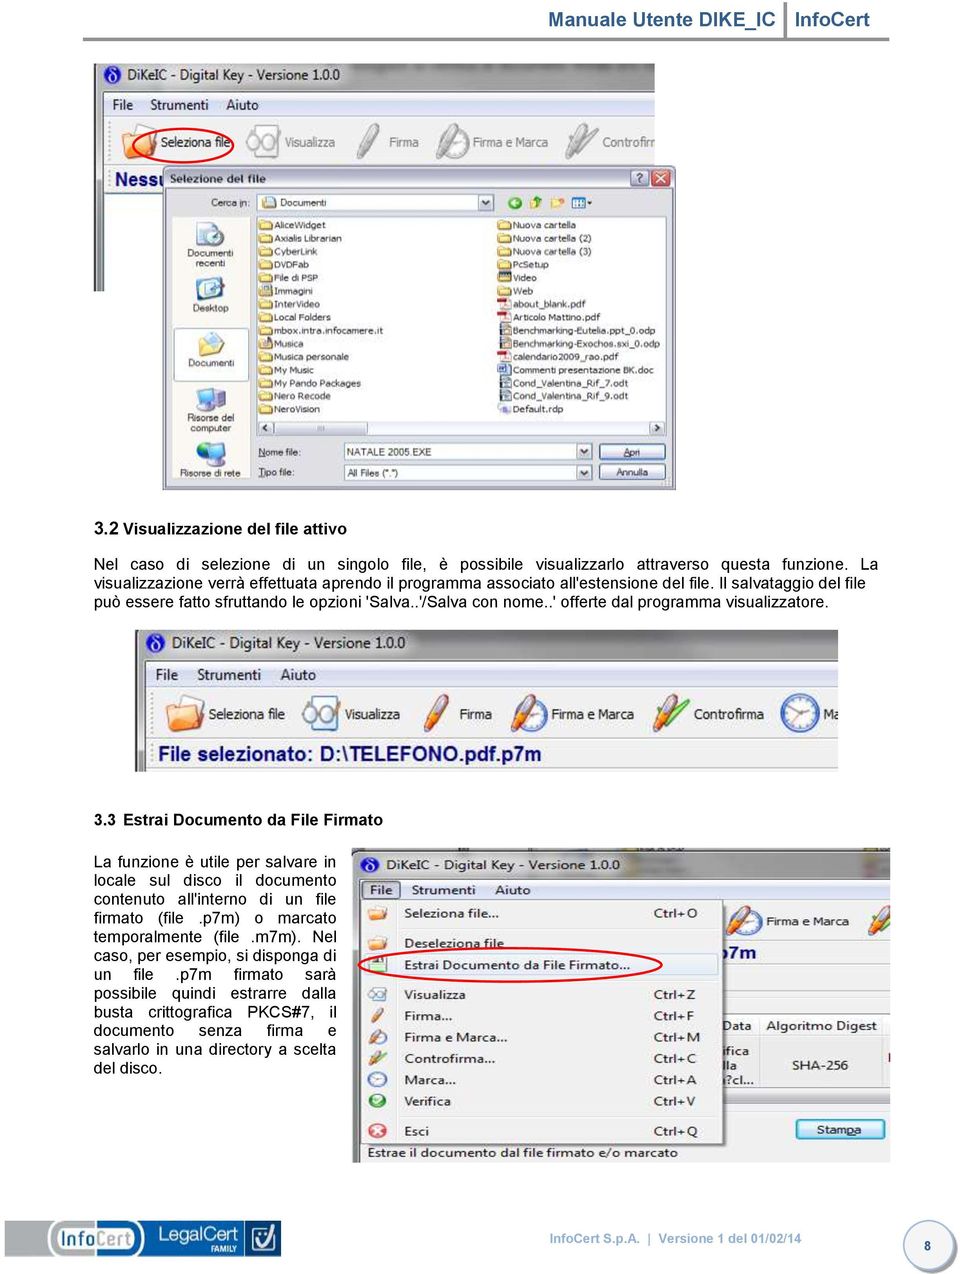 .' offerte dal programma visualizzatore. 3.3 Estrai Documento da File Firmato La funzione è utile per salvare in locale sul disco il documento contenuto all'interno di un file firmato (file.